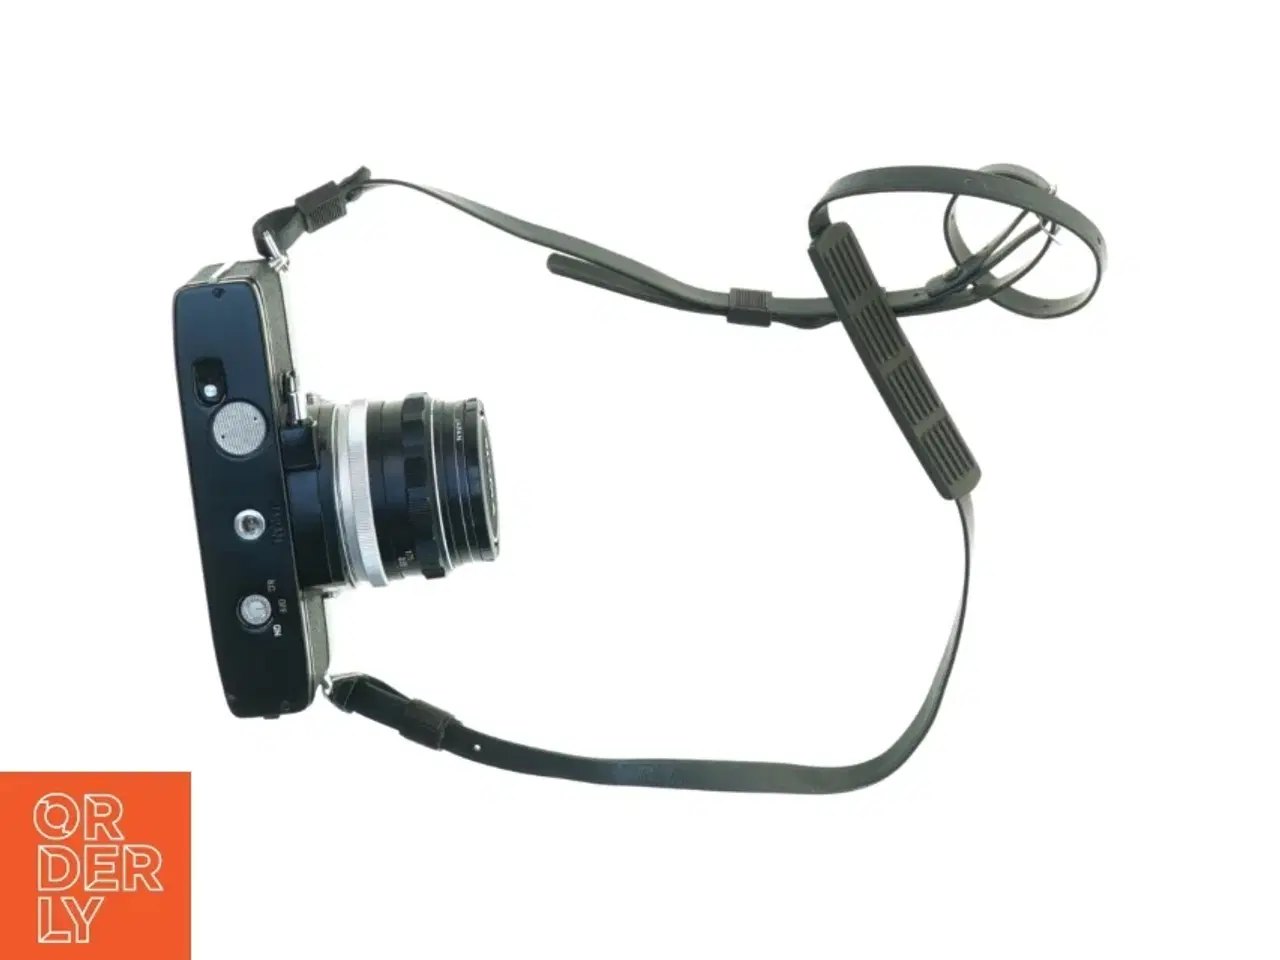 Billede 2 - Kamera fra Sigma (str. 14 x 9 x 10 cm)